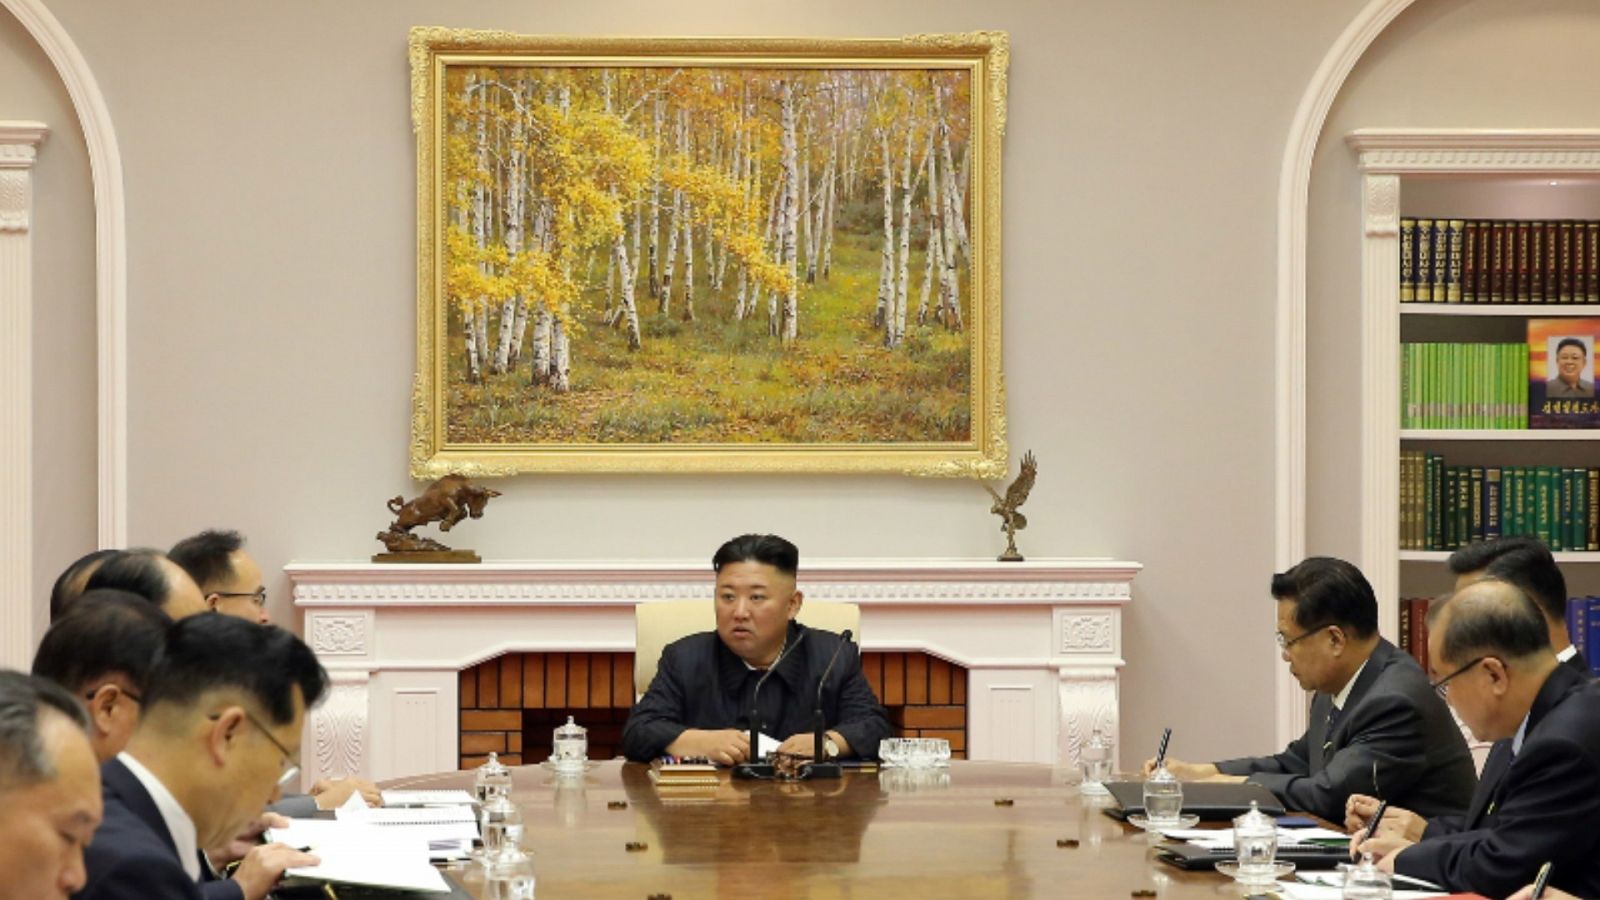 El líder norcoreano, Kim Jong-un, durante una reunión en el marco del octavo Comité Central del Partido de los Trabajadores de Corea en Pyongyang.